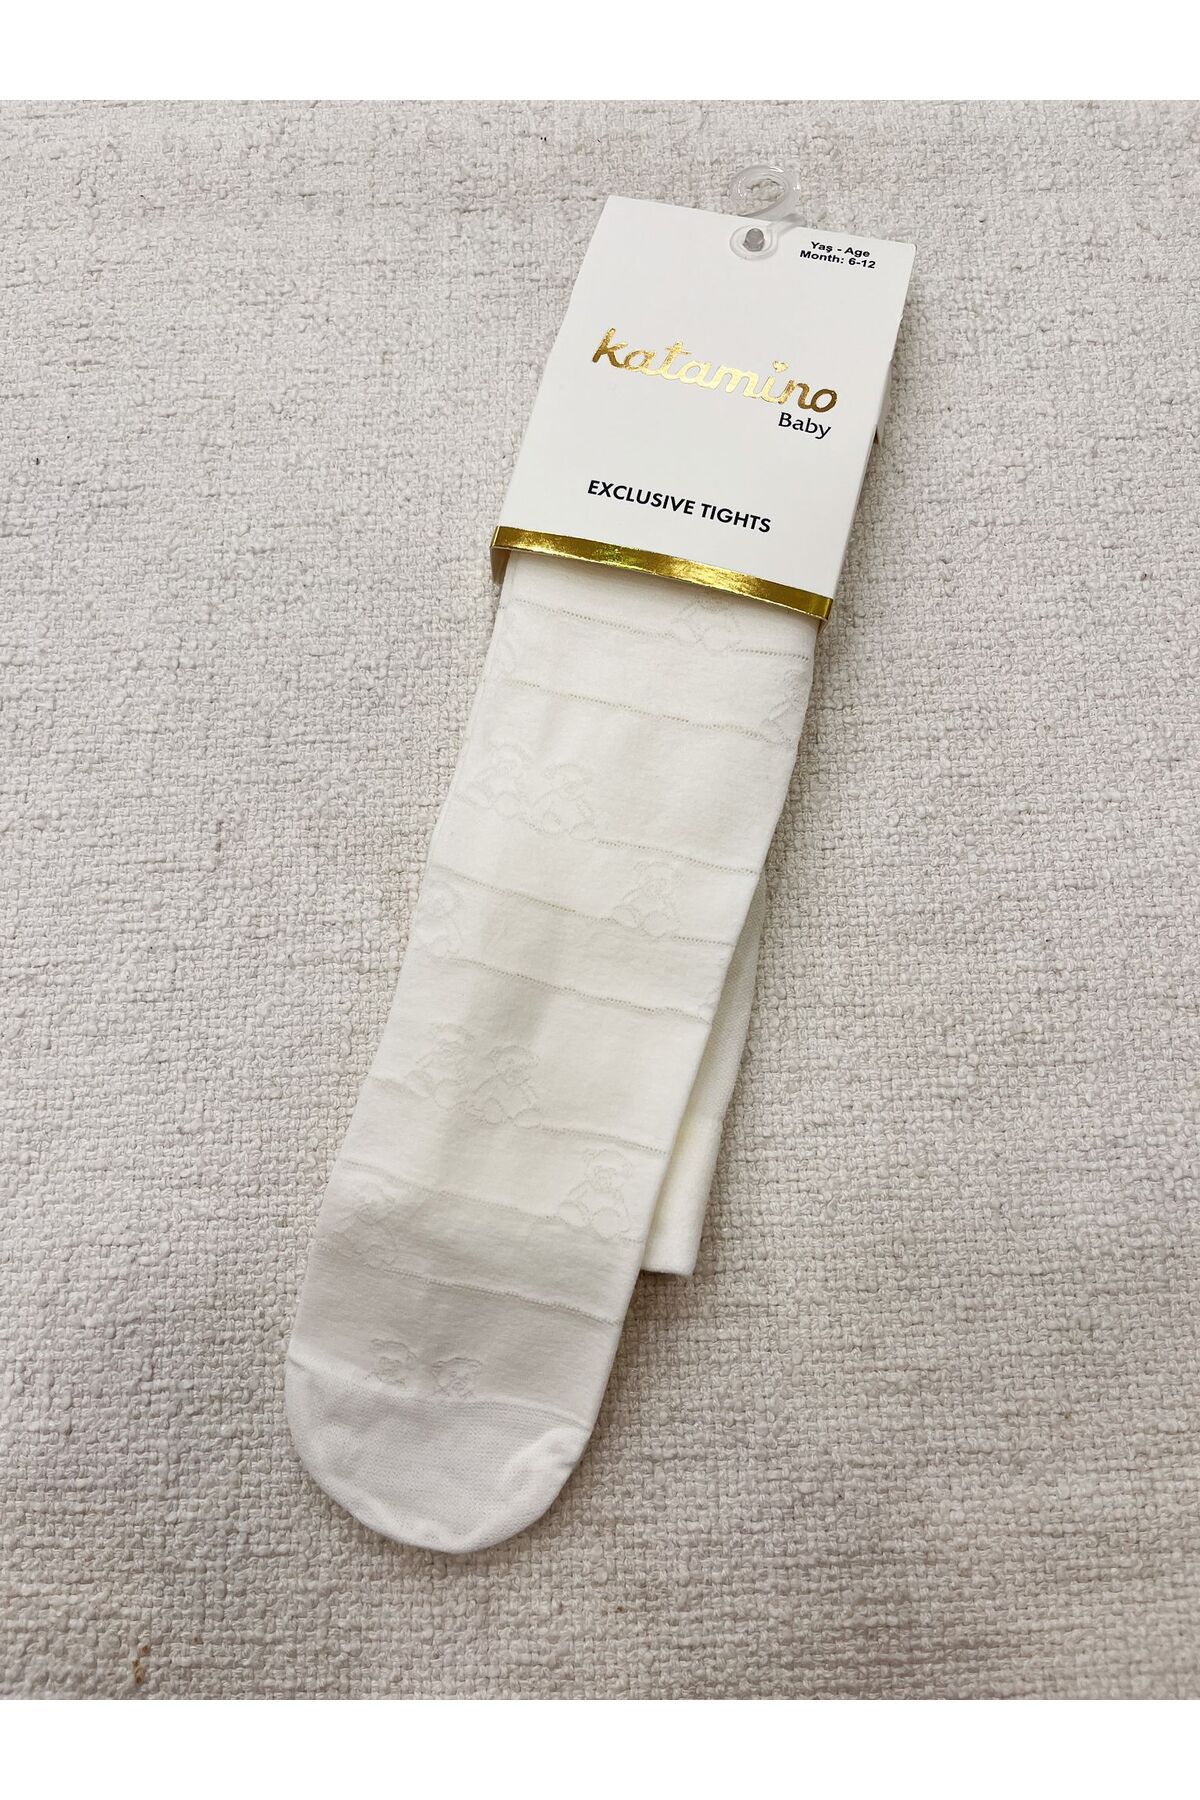 Katamino kız bebek külotlu çorap micro ince mevsimlik kumaş